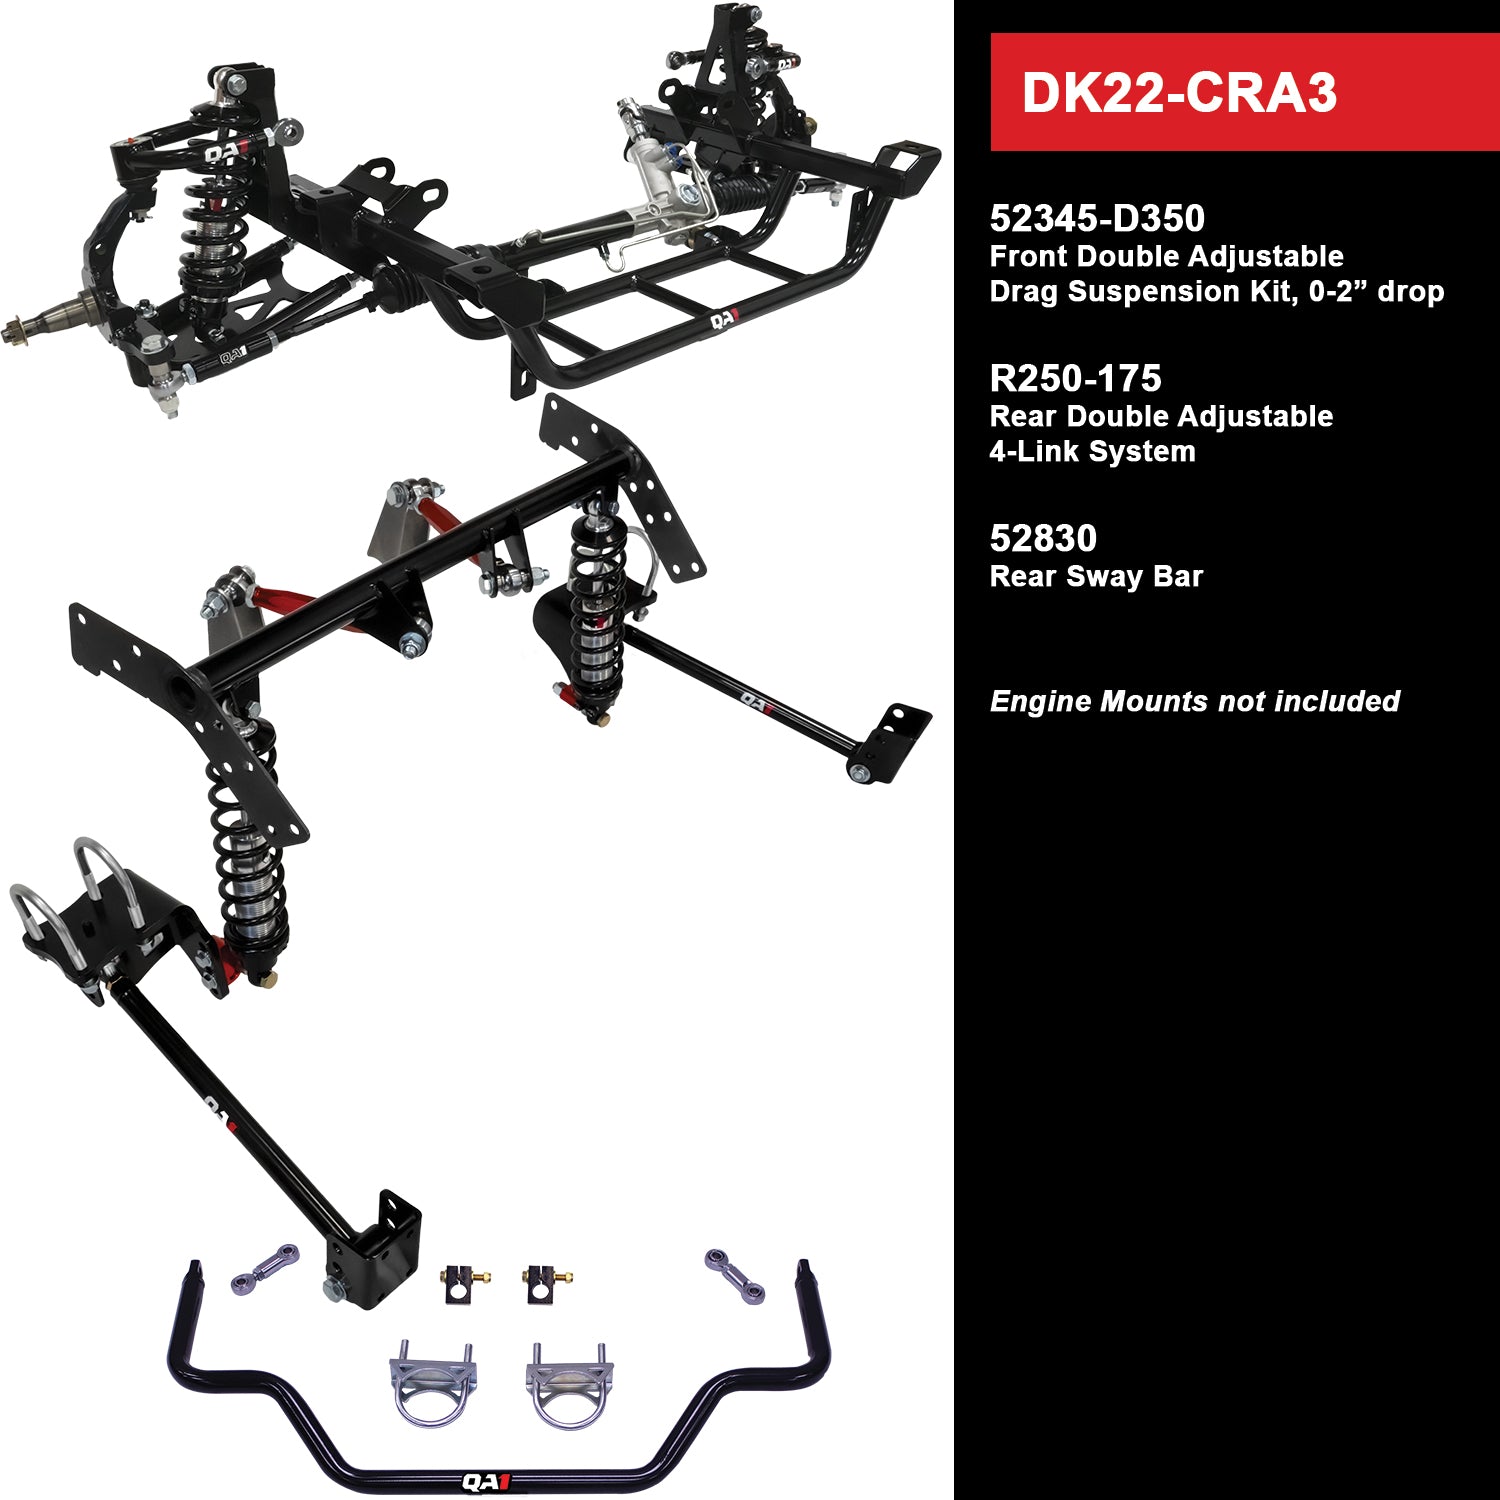 QA1 Drag Kit DK22-CRA3